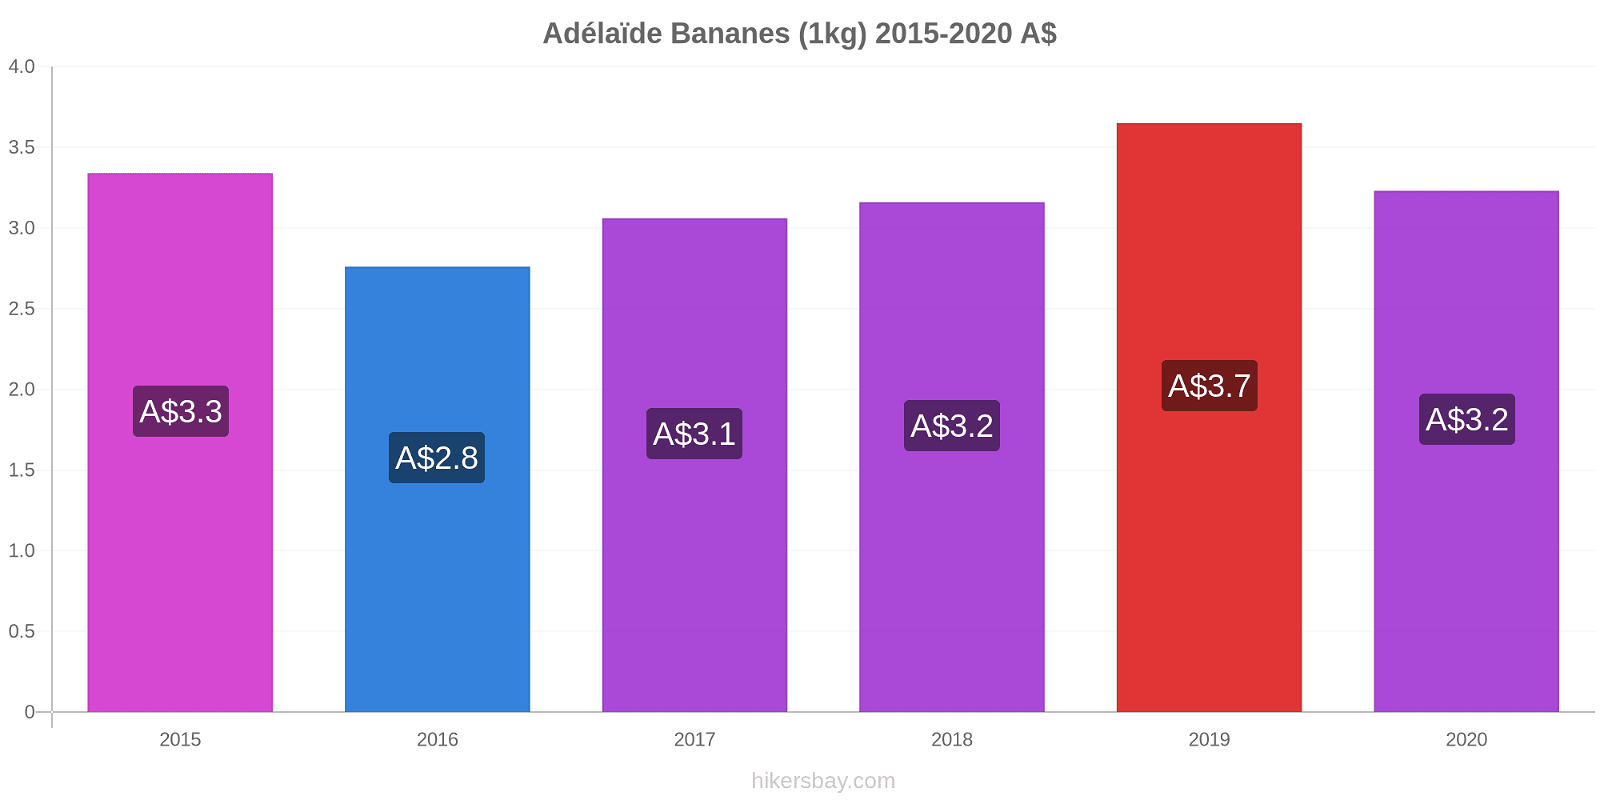 Adélaïde changements de prix Bananes (1kg) hikersbay.com